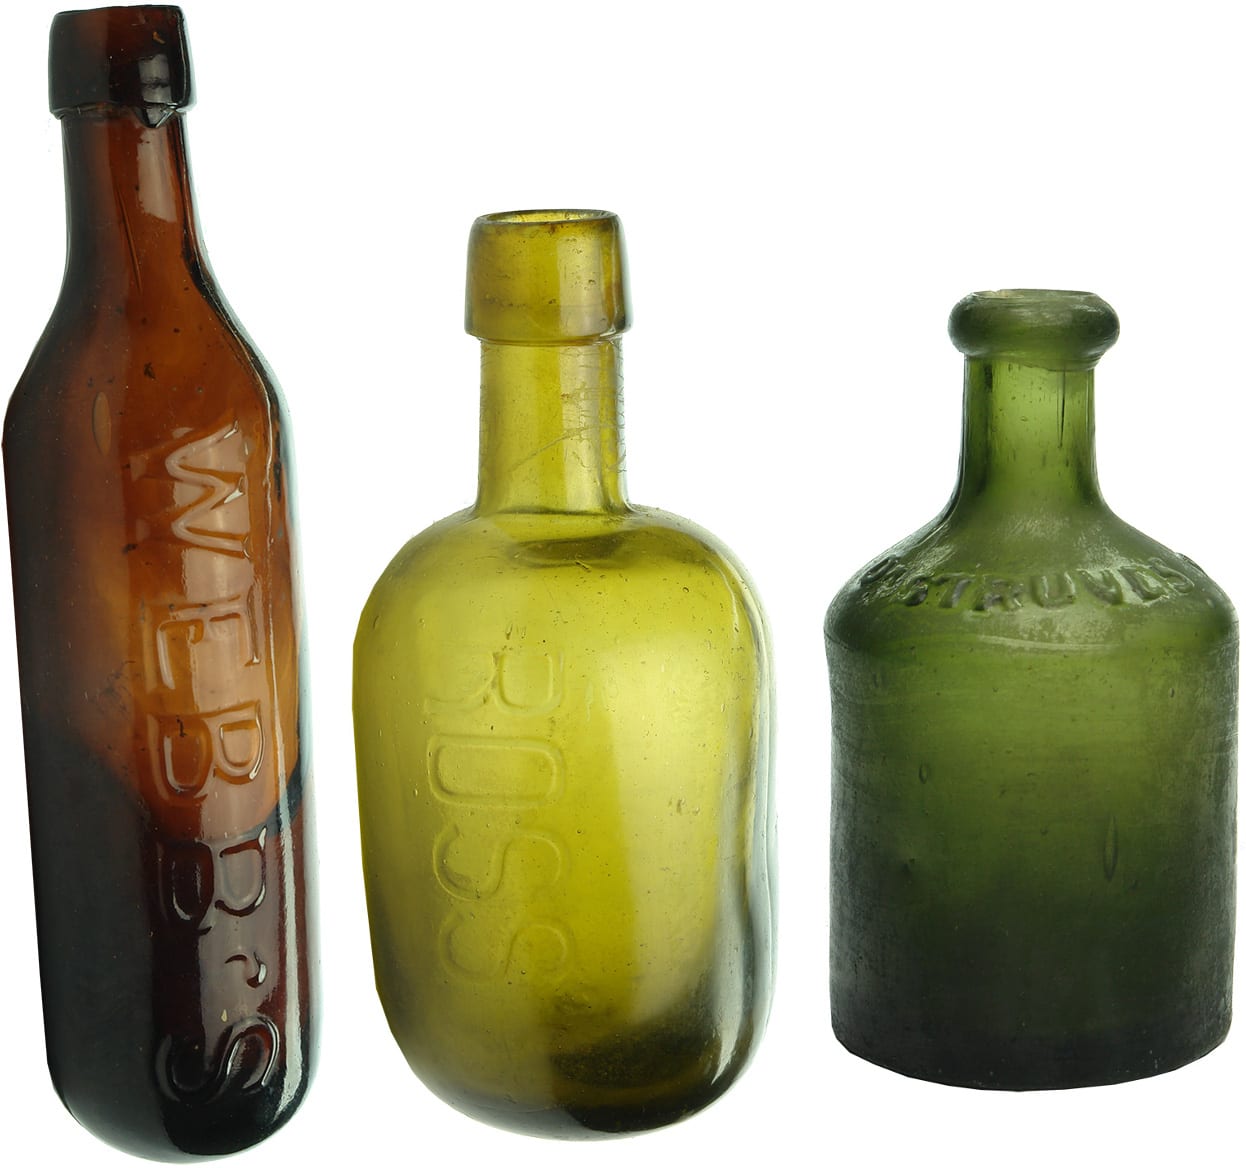 Antique Soft Drink Bottles